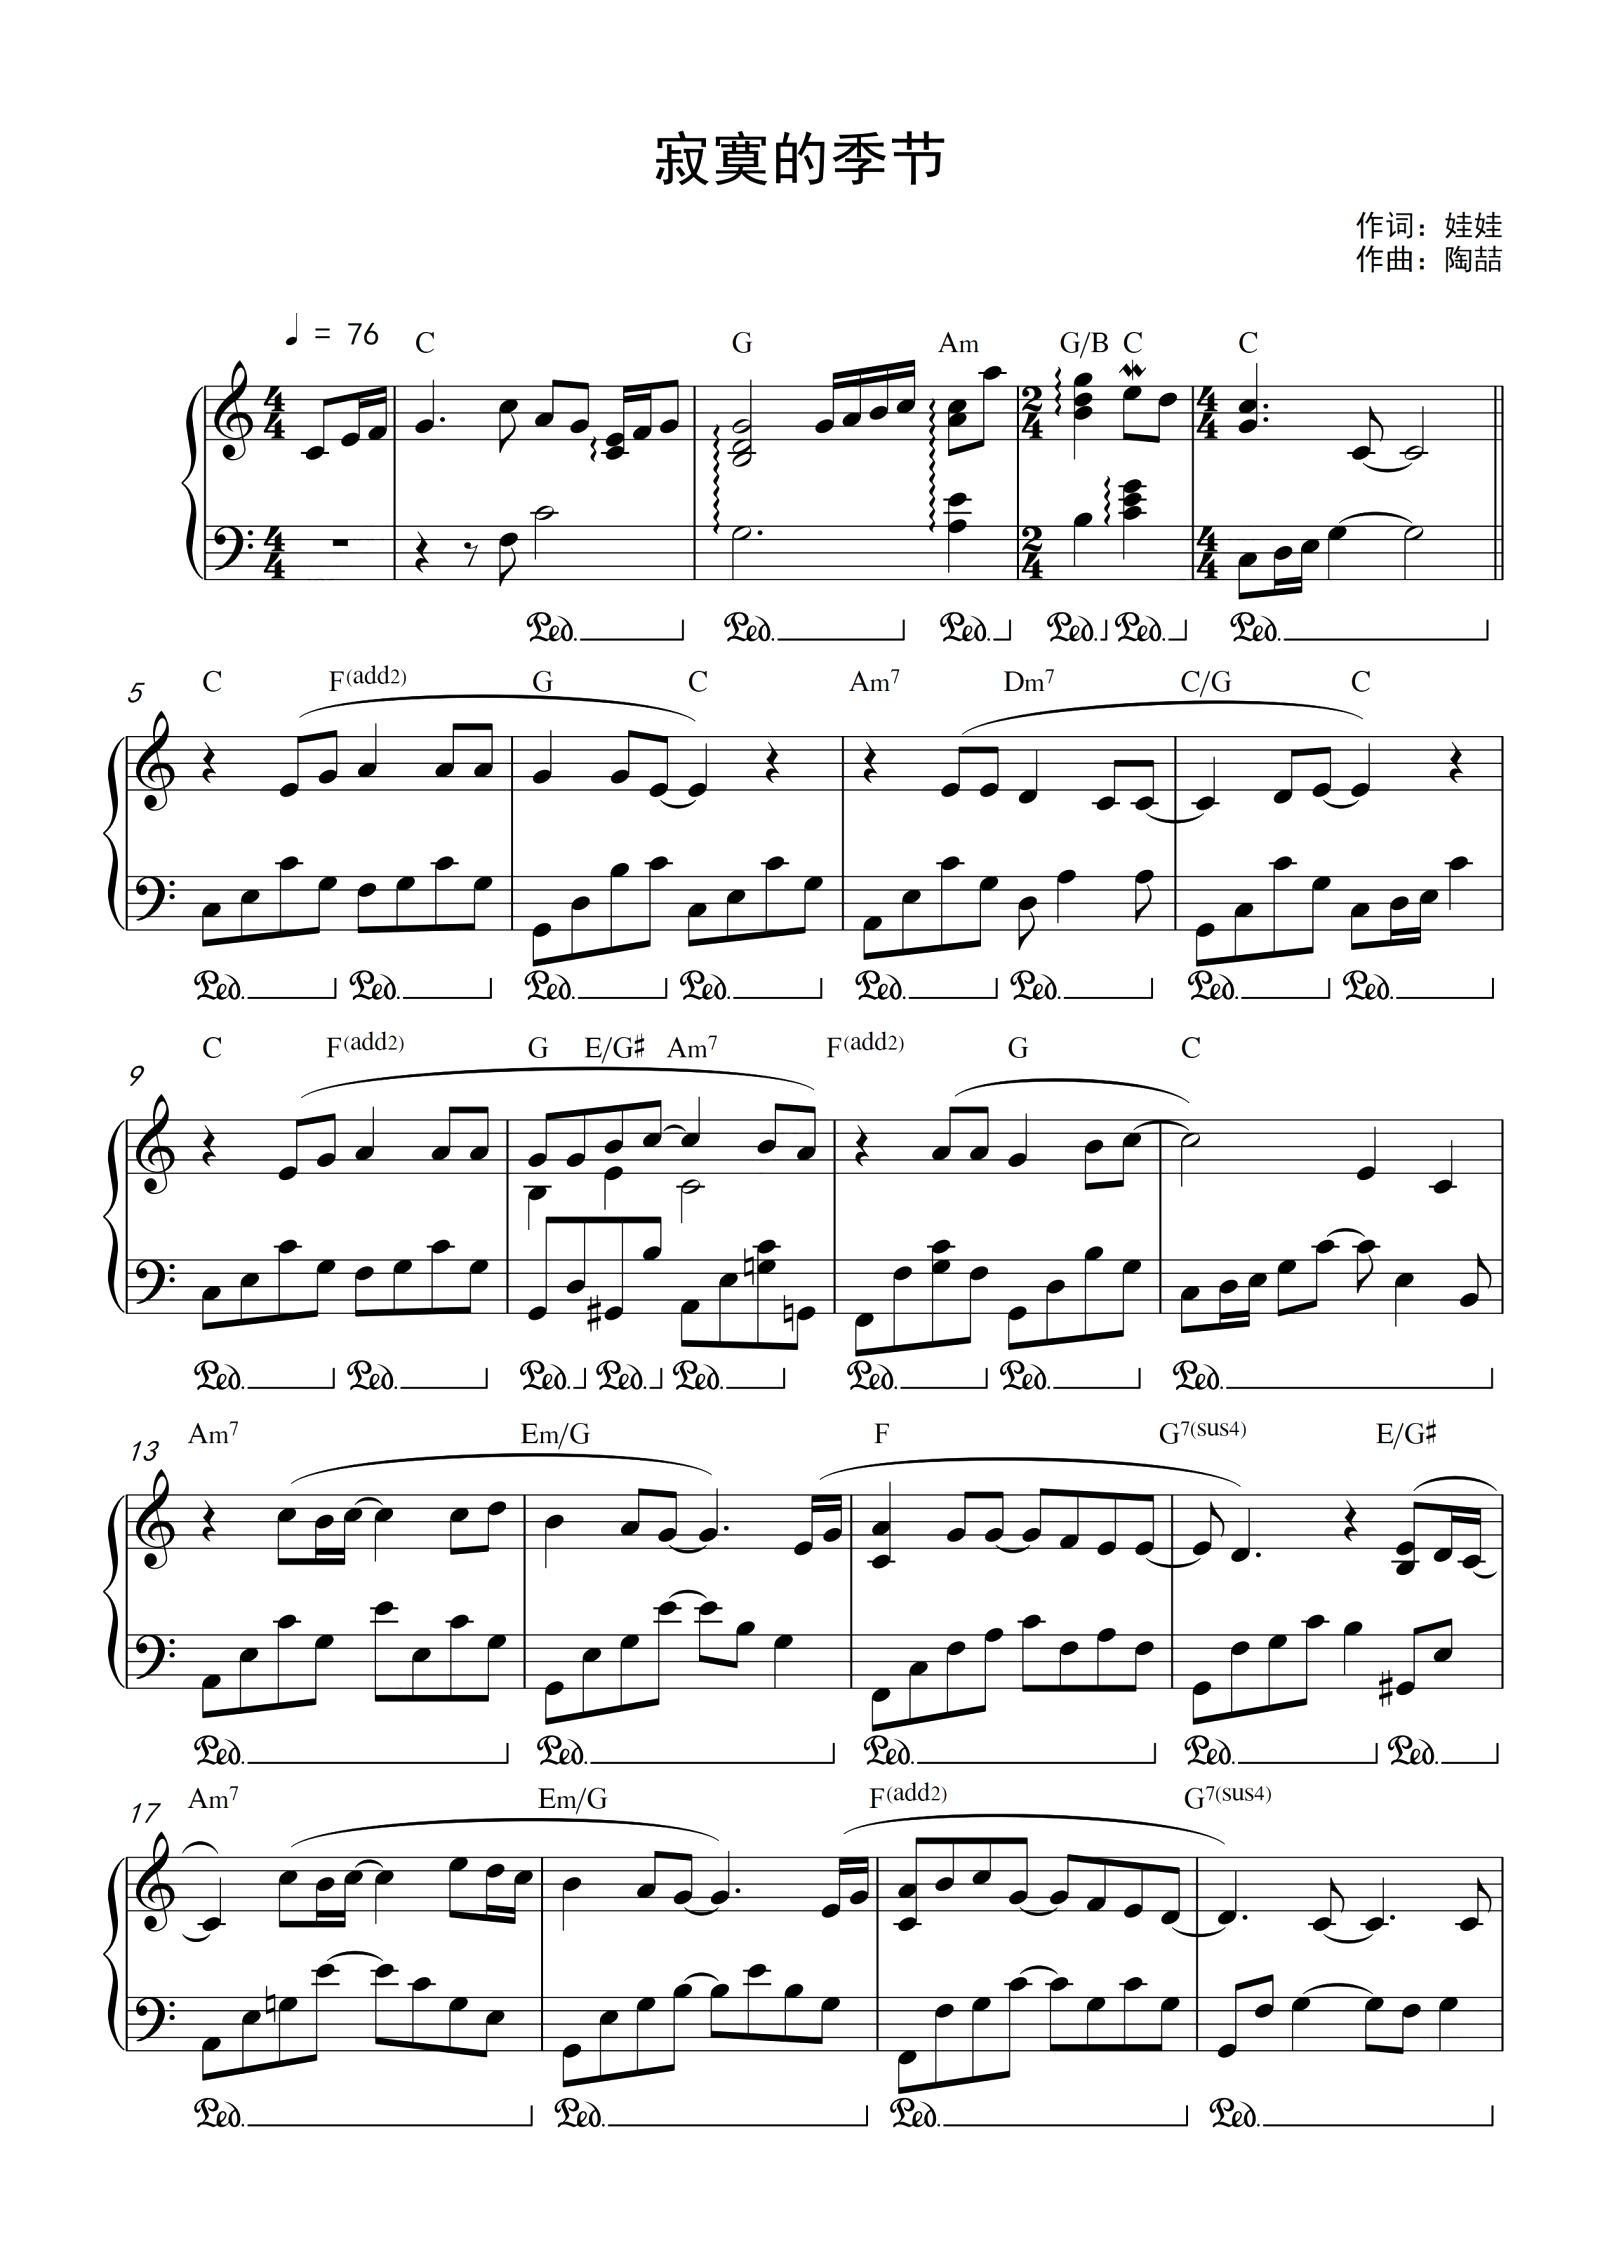 《寂寞的季节》简单钢琴谱 - 陶喆左手右手慢速版 - 简易入门版 - 钢琴简谱